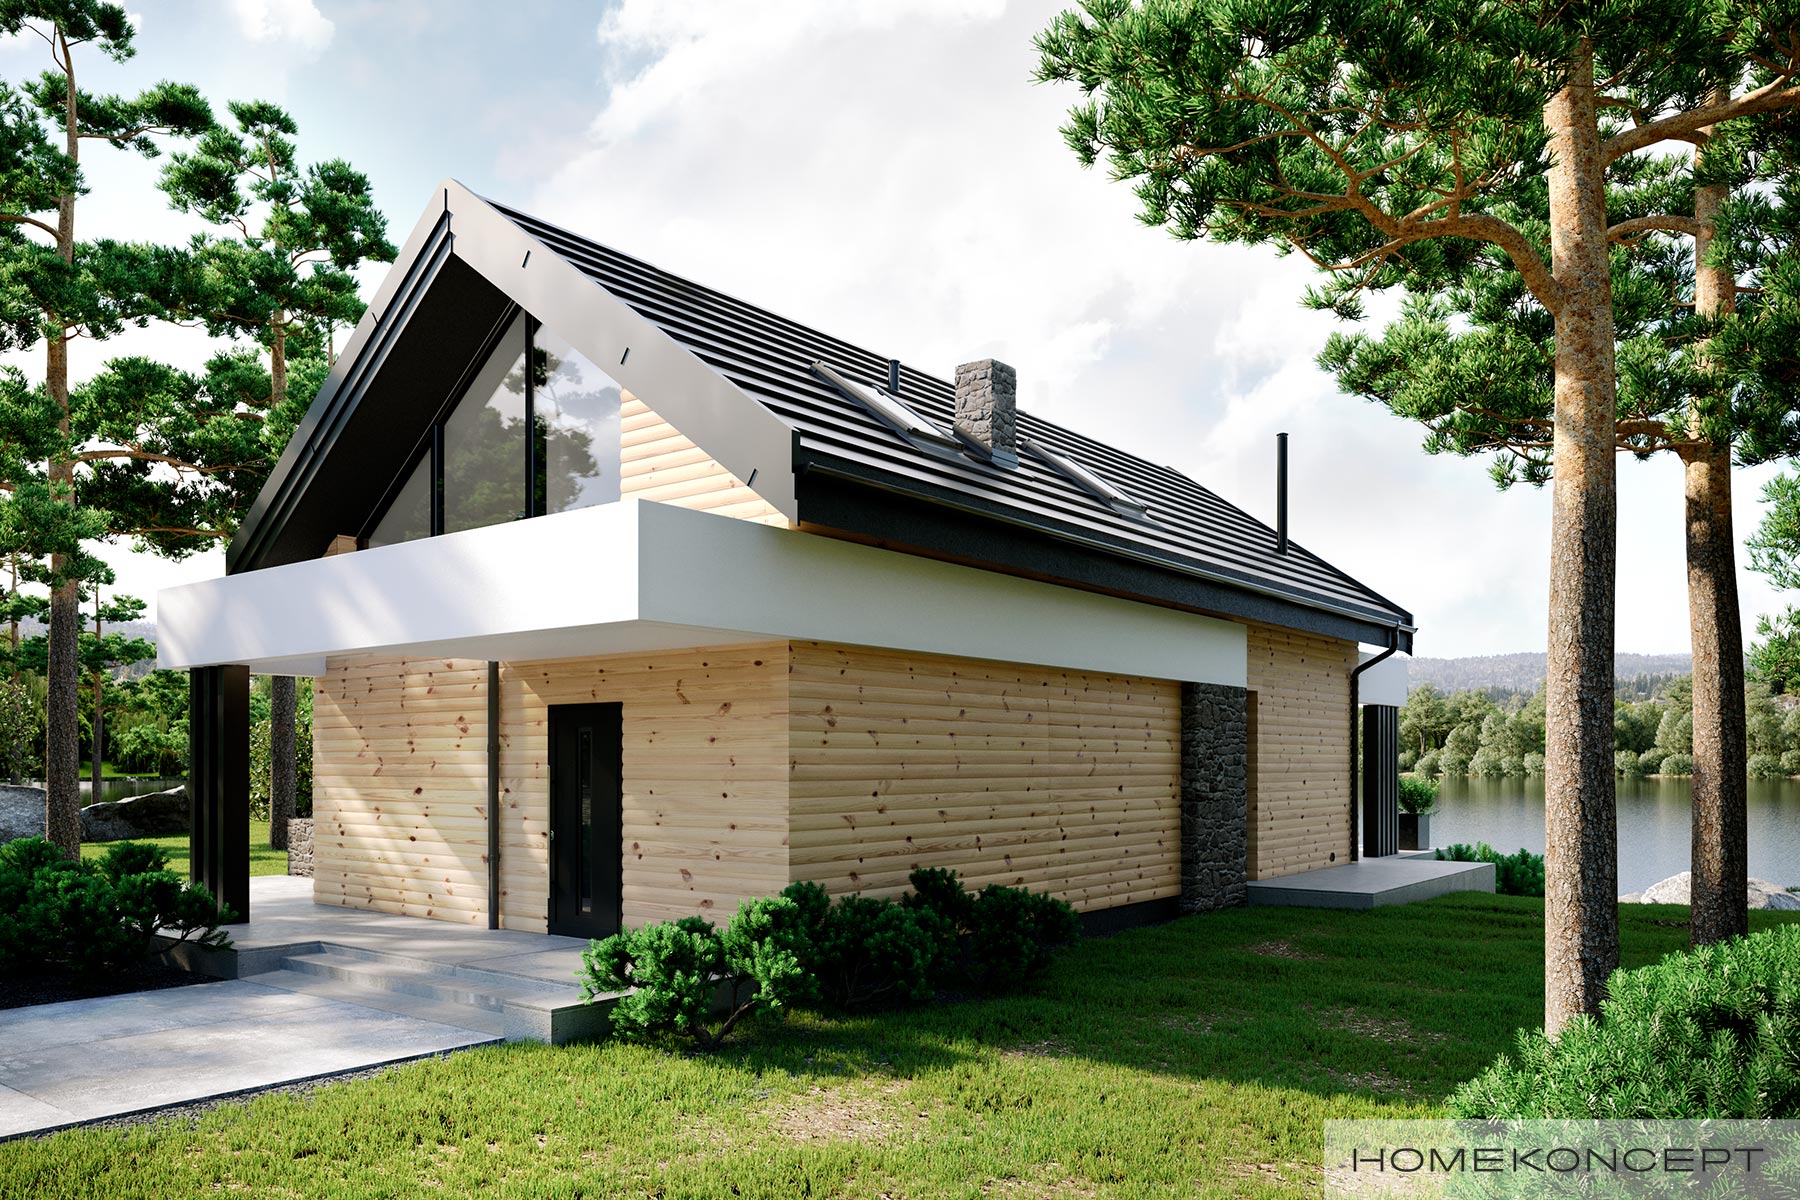 Zalety dachu dwuspadowego – gotowy projekt domu HOMEKONCEPT 66